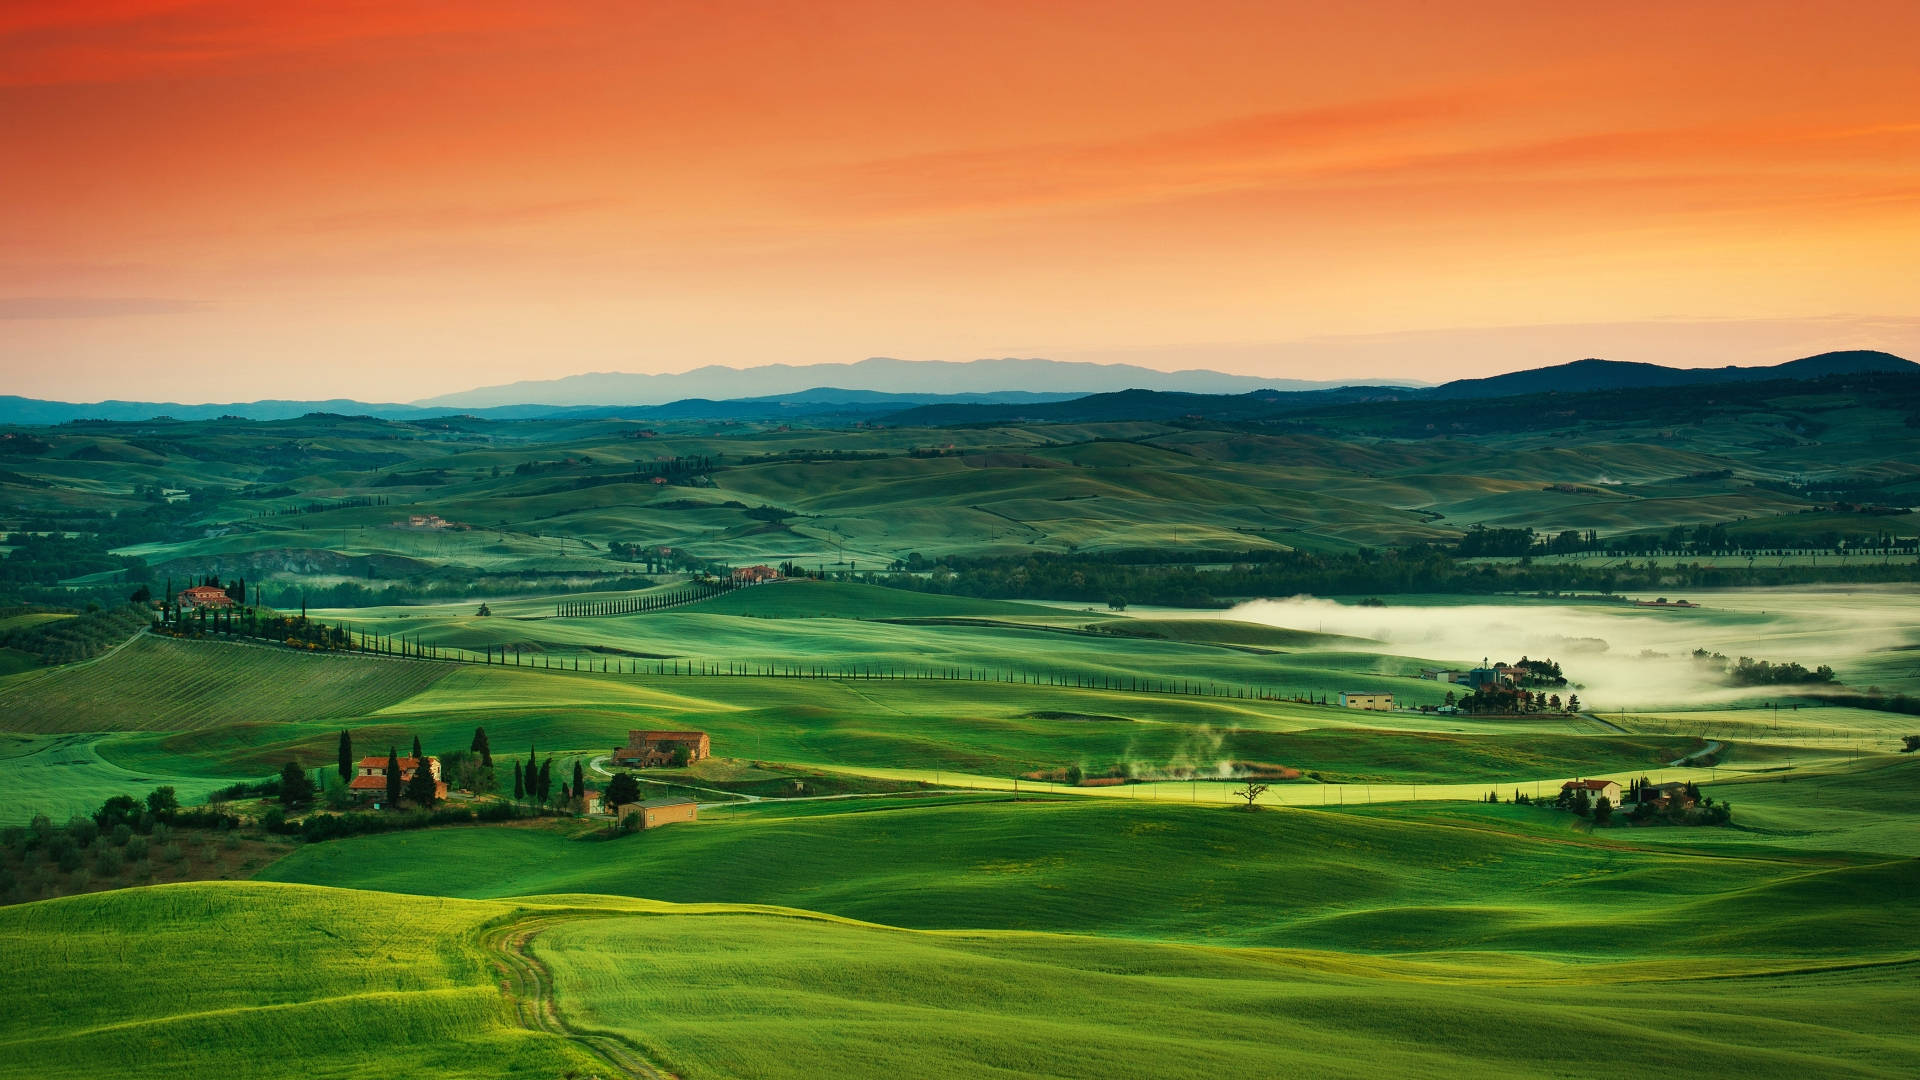 Hình nền Tuscany Fields mang đến cho bạn cảm giác như đang đứng giữa những cánh đồng hoa tuylip tươi sáng vậy. Với màu sắc đẹp mắt, hình nền sẽ khiến bạn cảm thấy thư giãn và ngắm nhìn nó lâu dài. Nếu thích những hình ảnh thiên nhiên thì hình nền Tuscany Fields chắc chắn là sự lựa chọn hoàn hảo cho bạn.